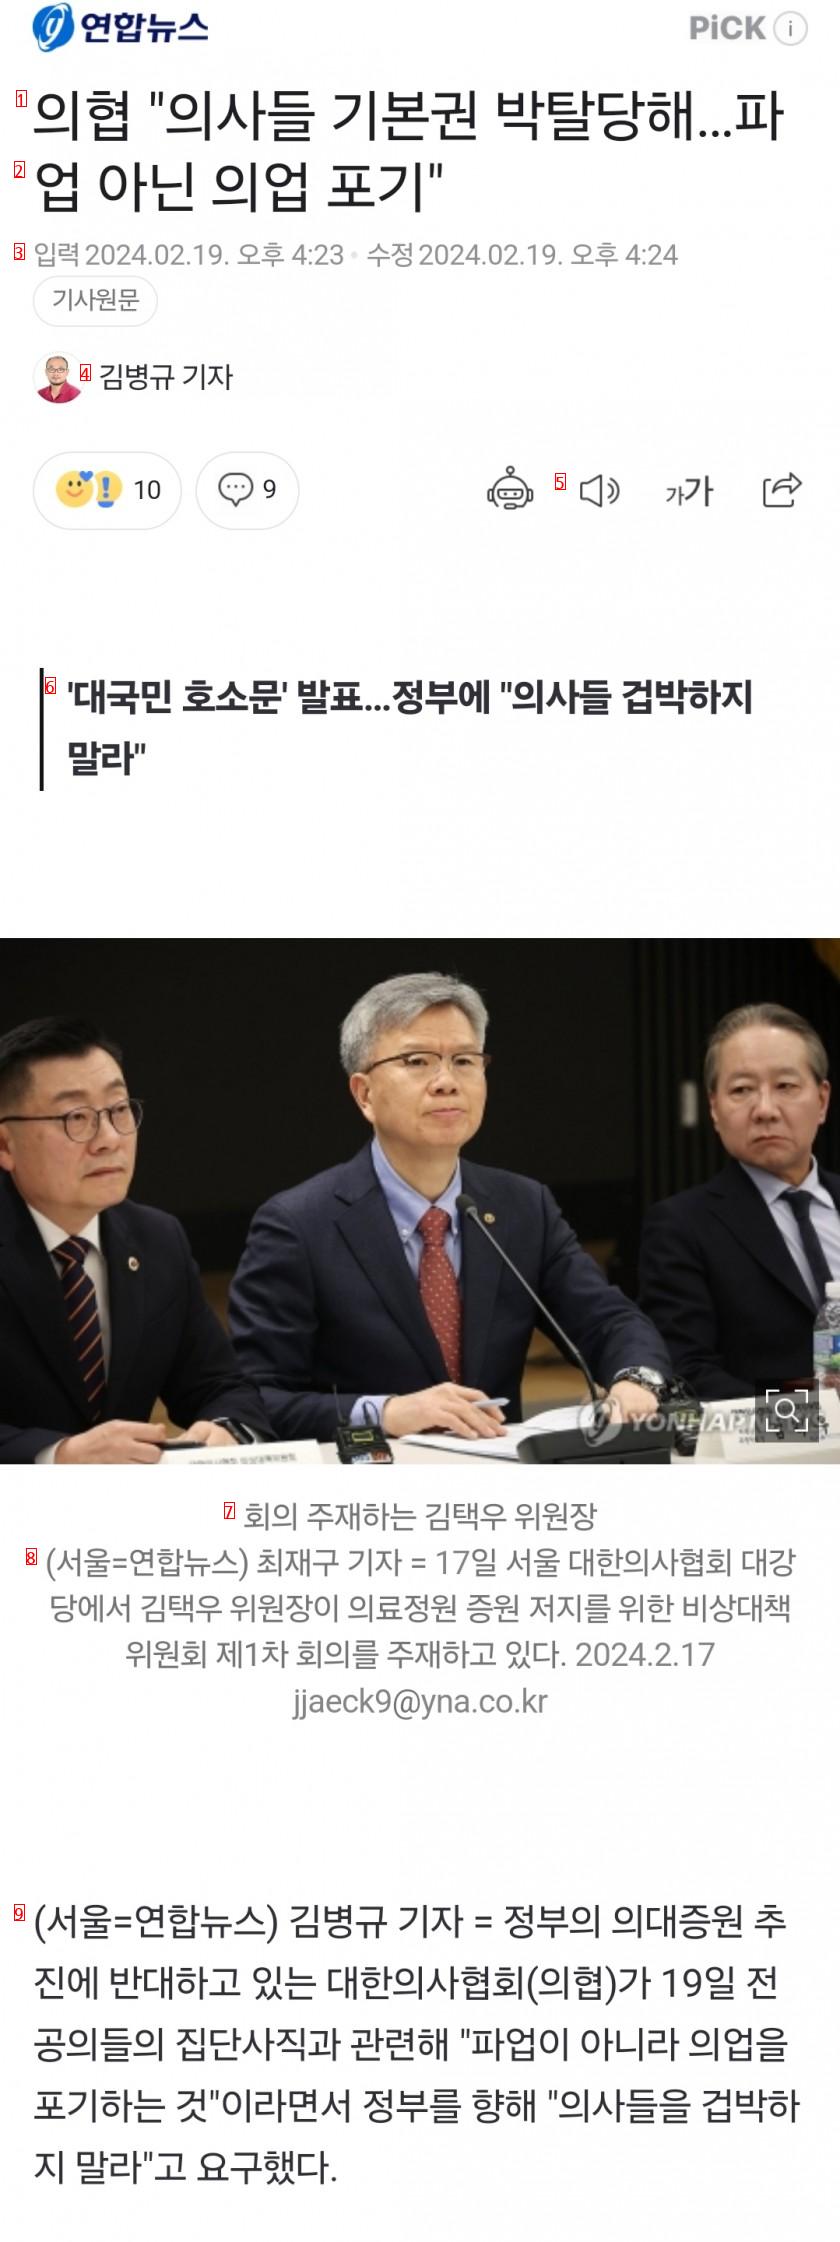 의협 ''대국민 호소문'' 발표